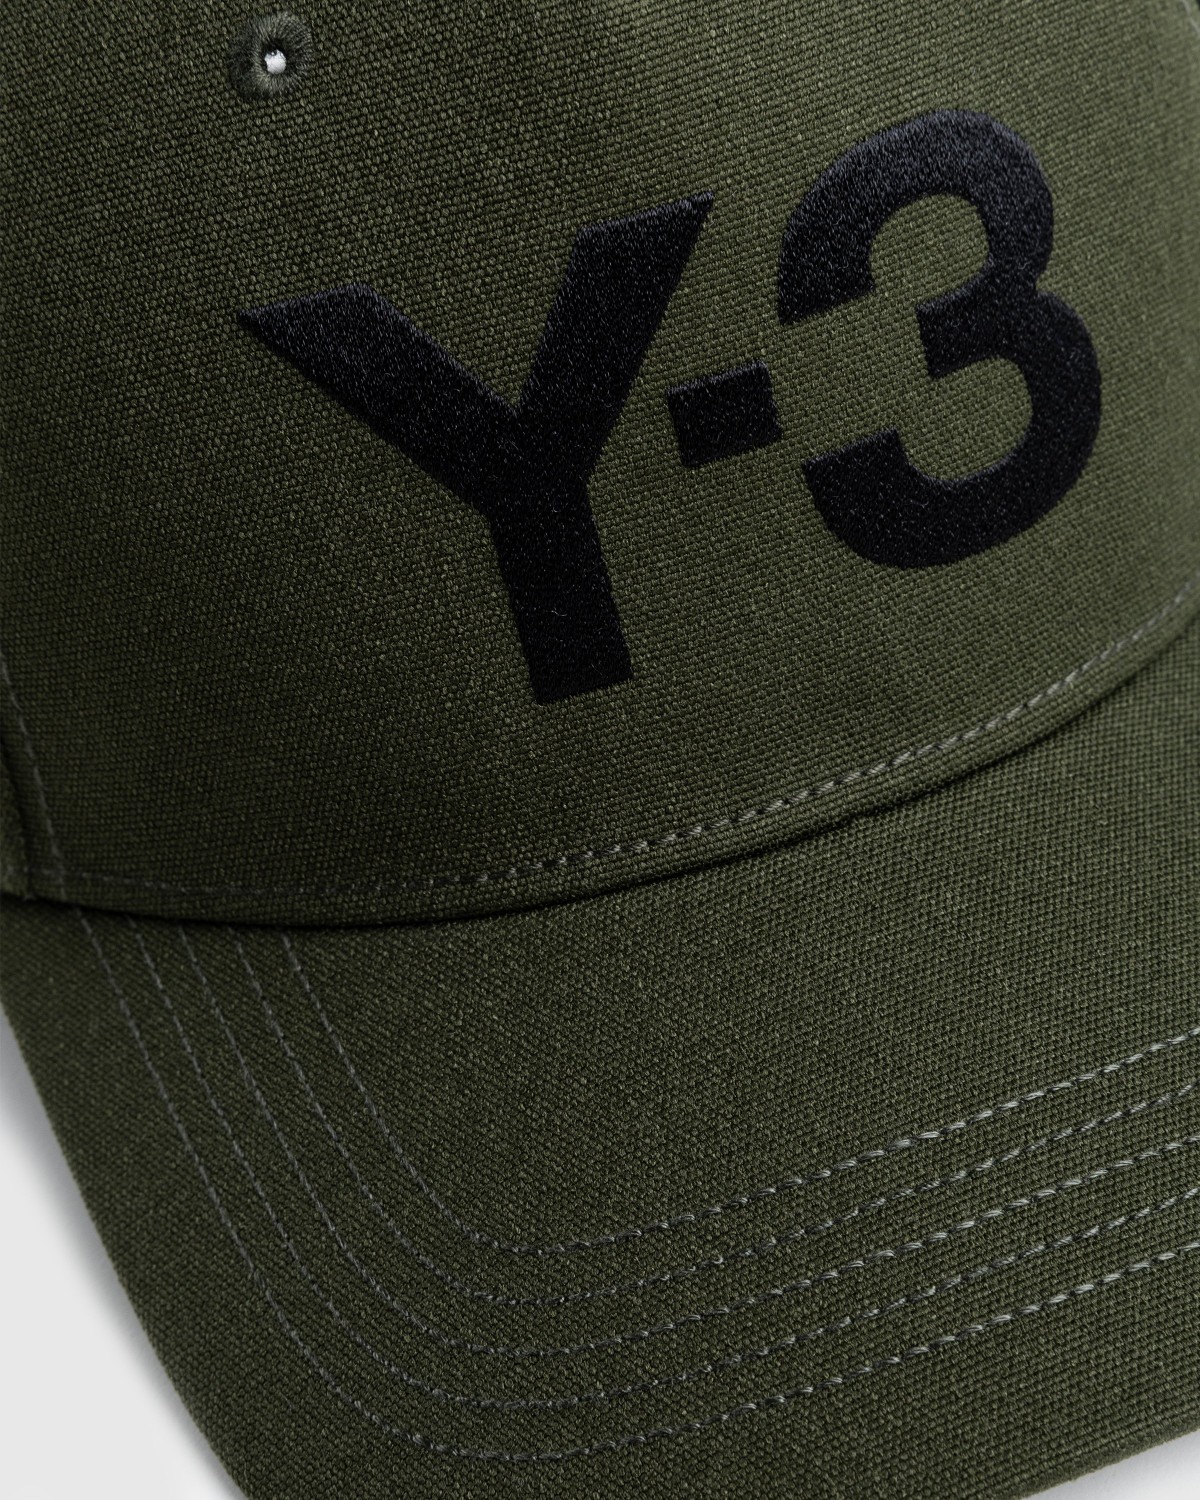 Y-3 – Logo Cap Night Cargo | Highsnobiety Shop